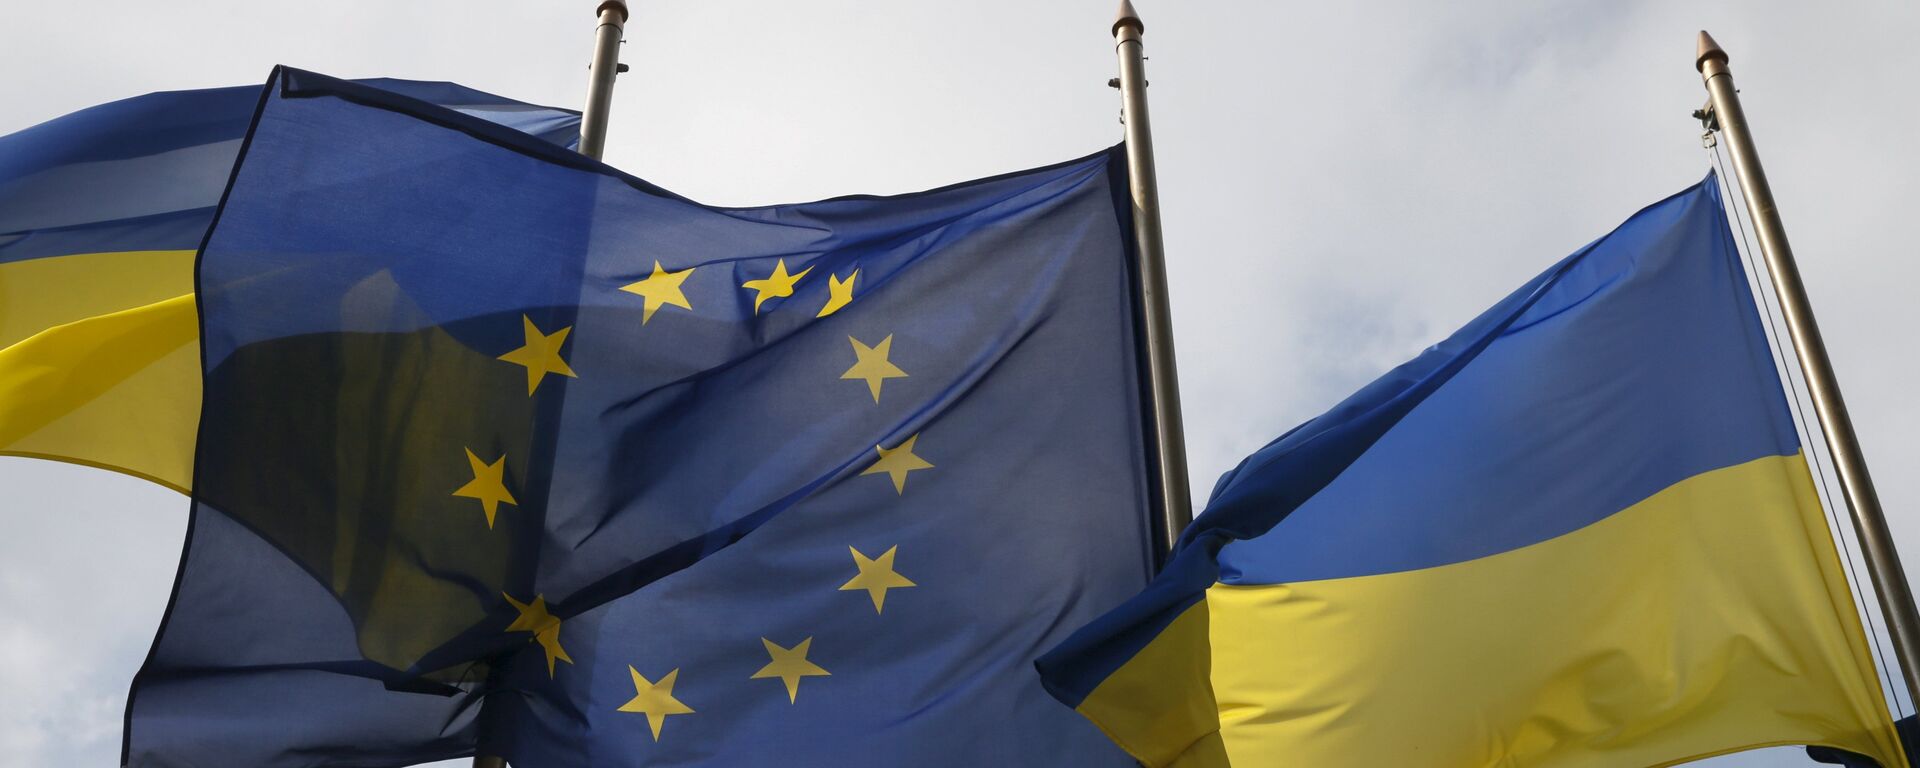 Флаги Украины и ЕС - Sputnik Латвия, 1920, 18.12.2018